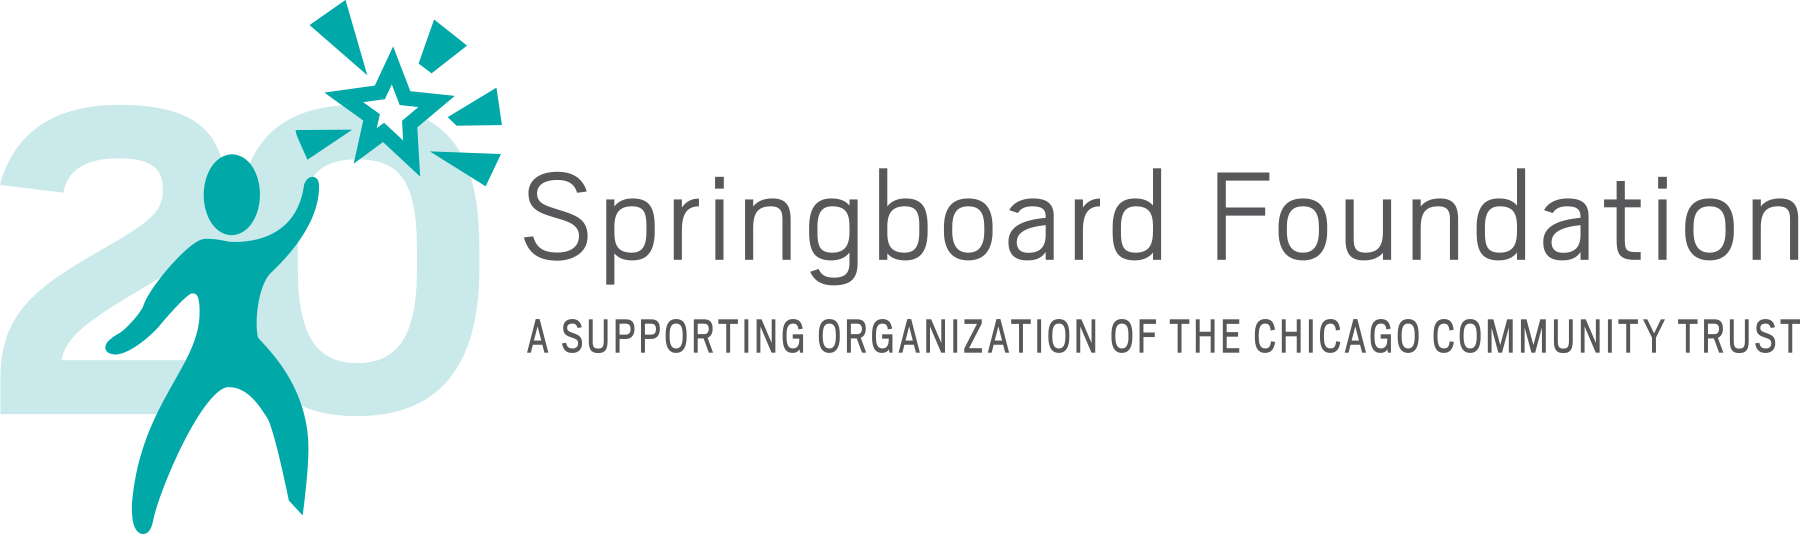 Springboard Foundation 20th Anniversary